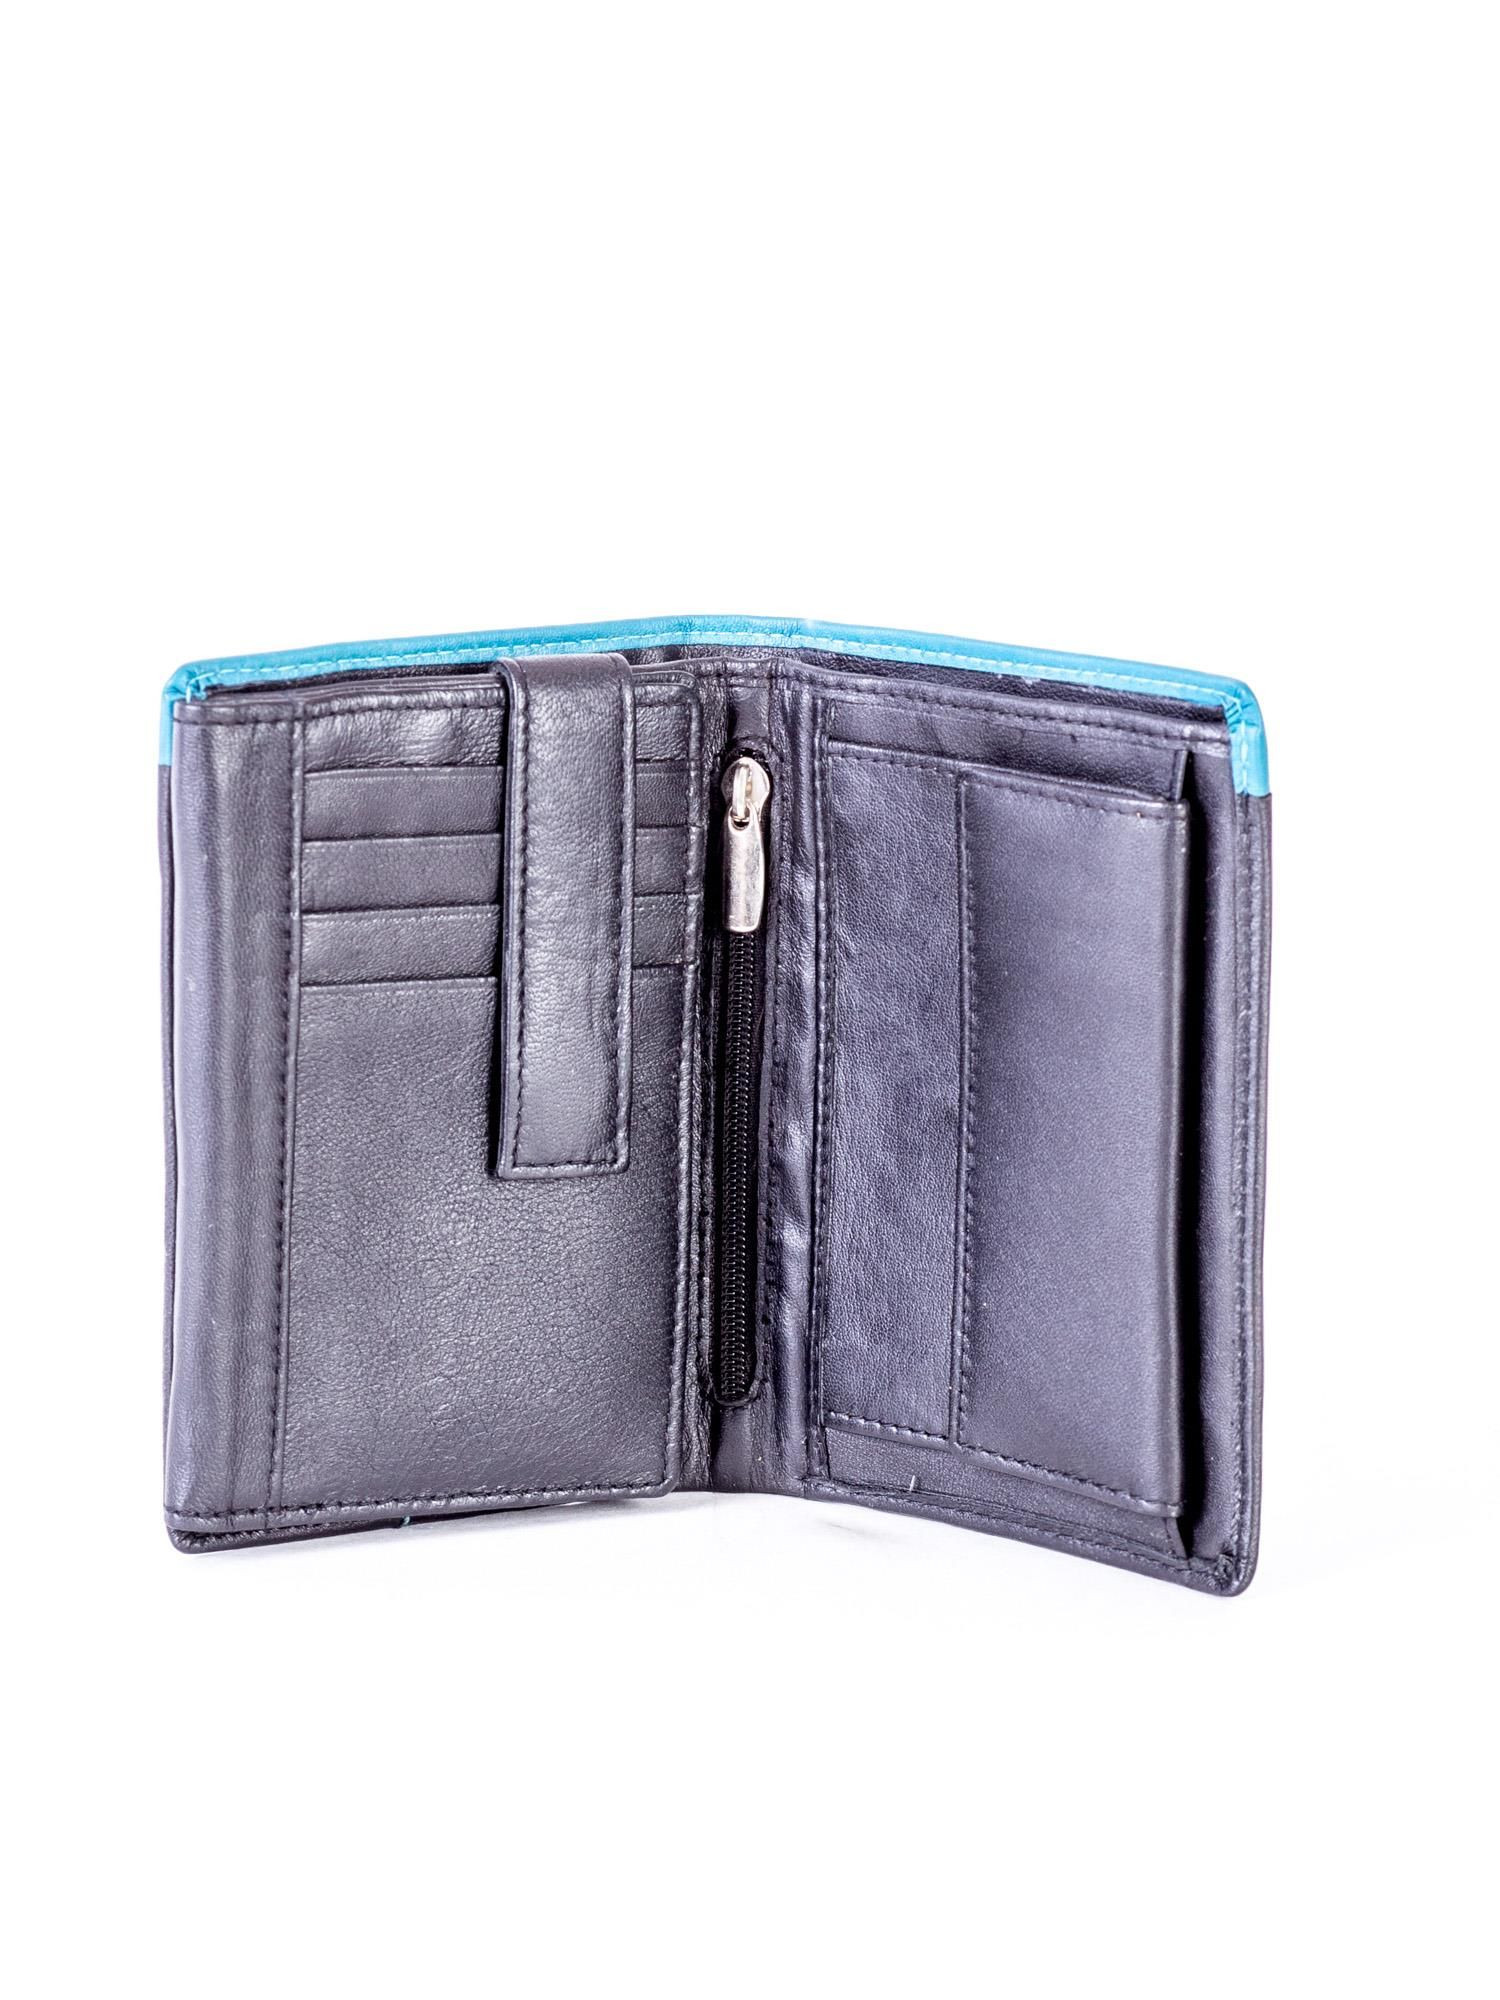 Peněženka CE PR černá a modrá jedna velikost model 16228724 - FPrice